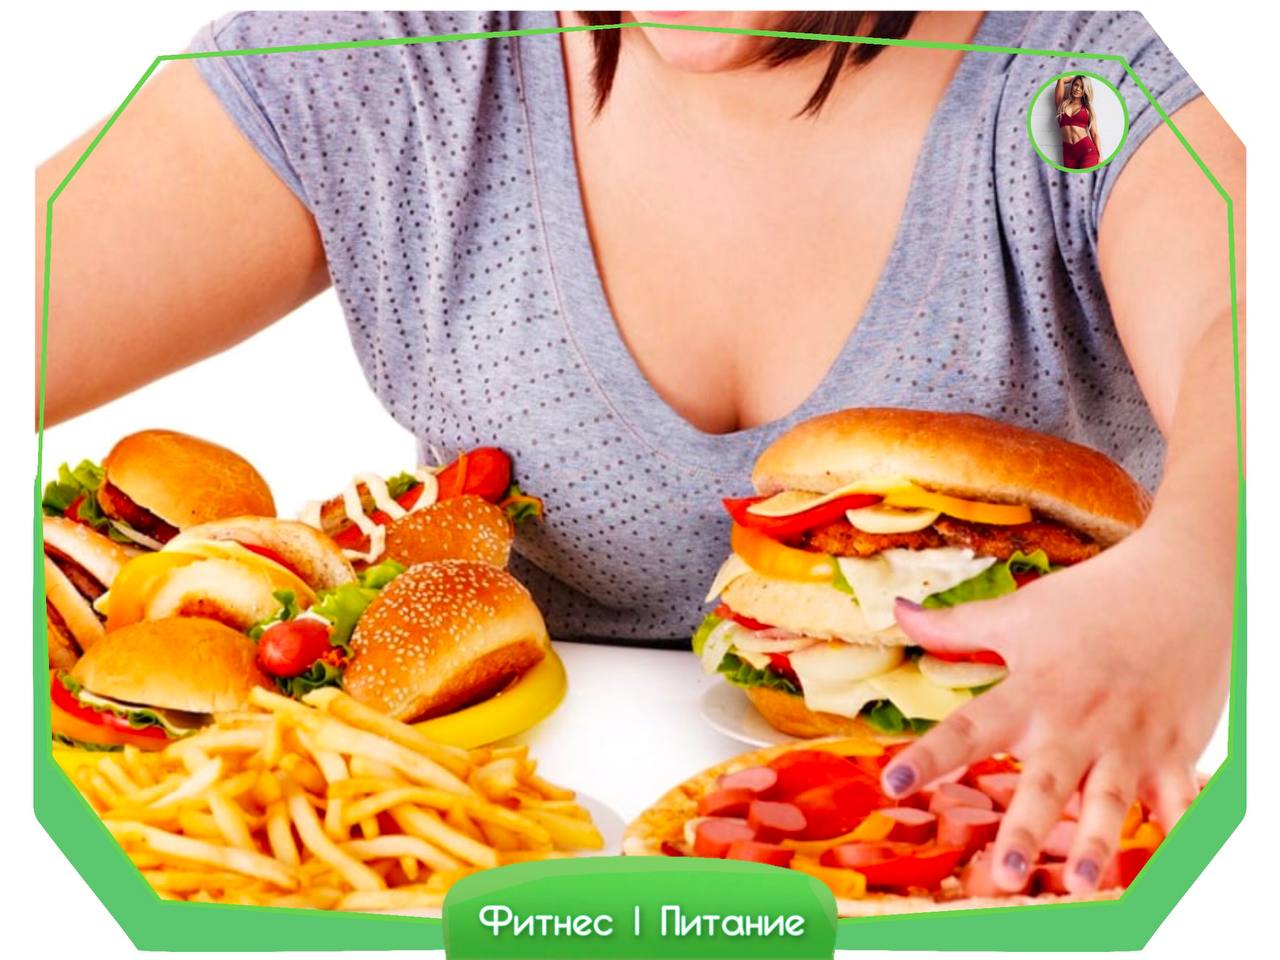 Пищевой голод. Нерациональное питание. Компульсивное переедание. Нарушение питания. Неправильное питание и ожирение.